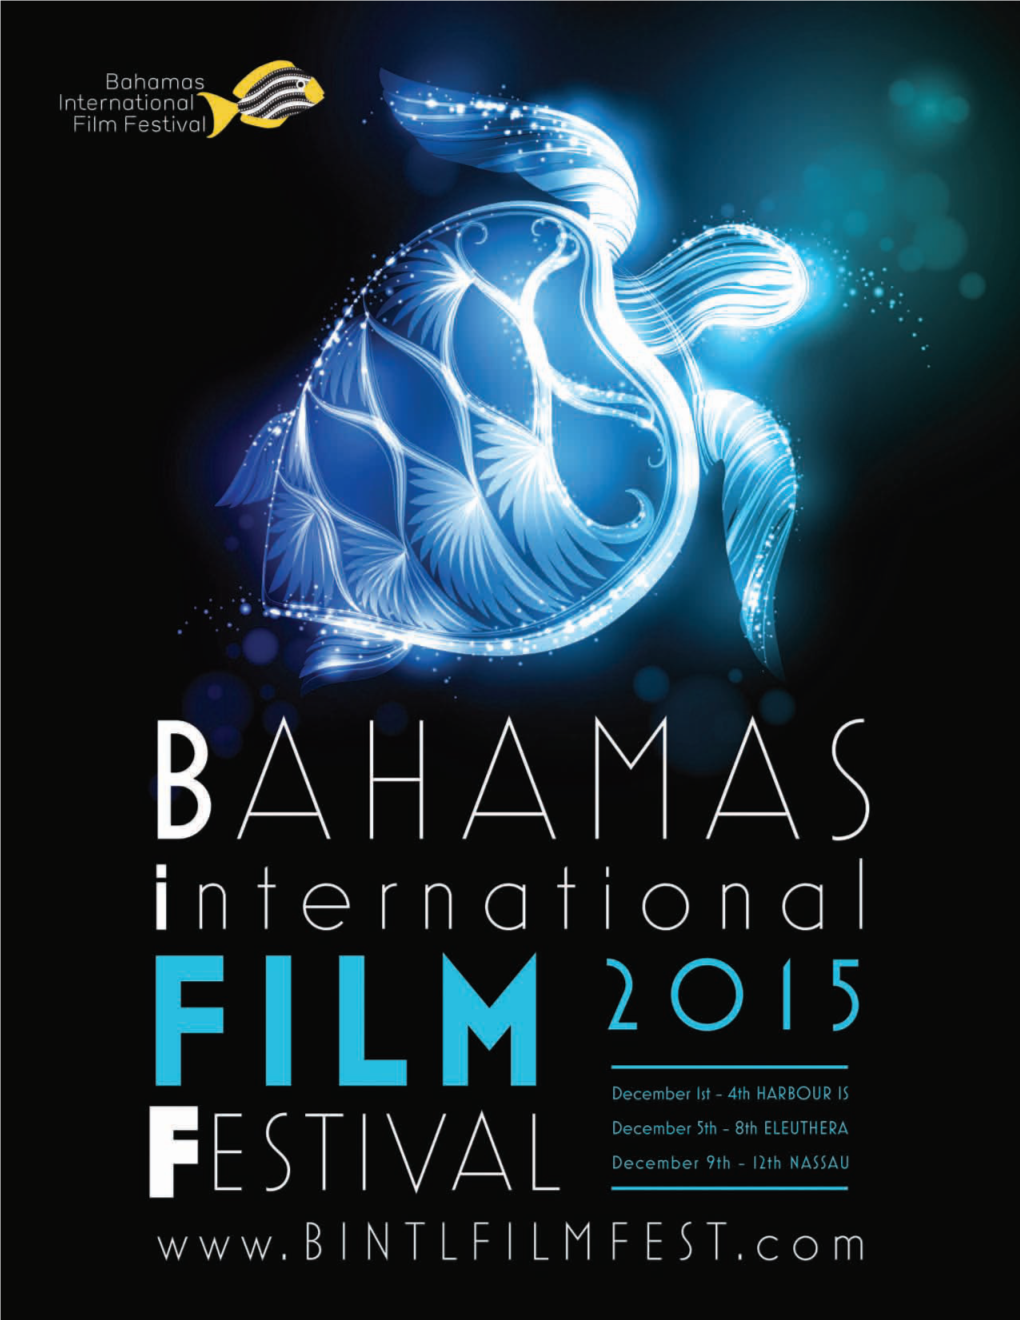 Official Festival Program 2015